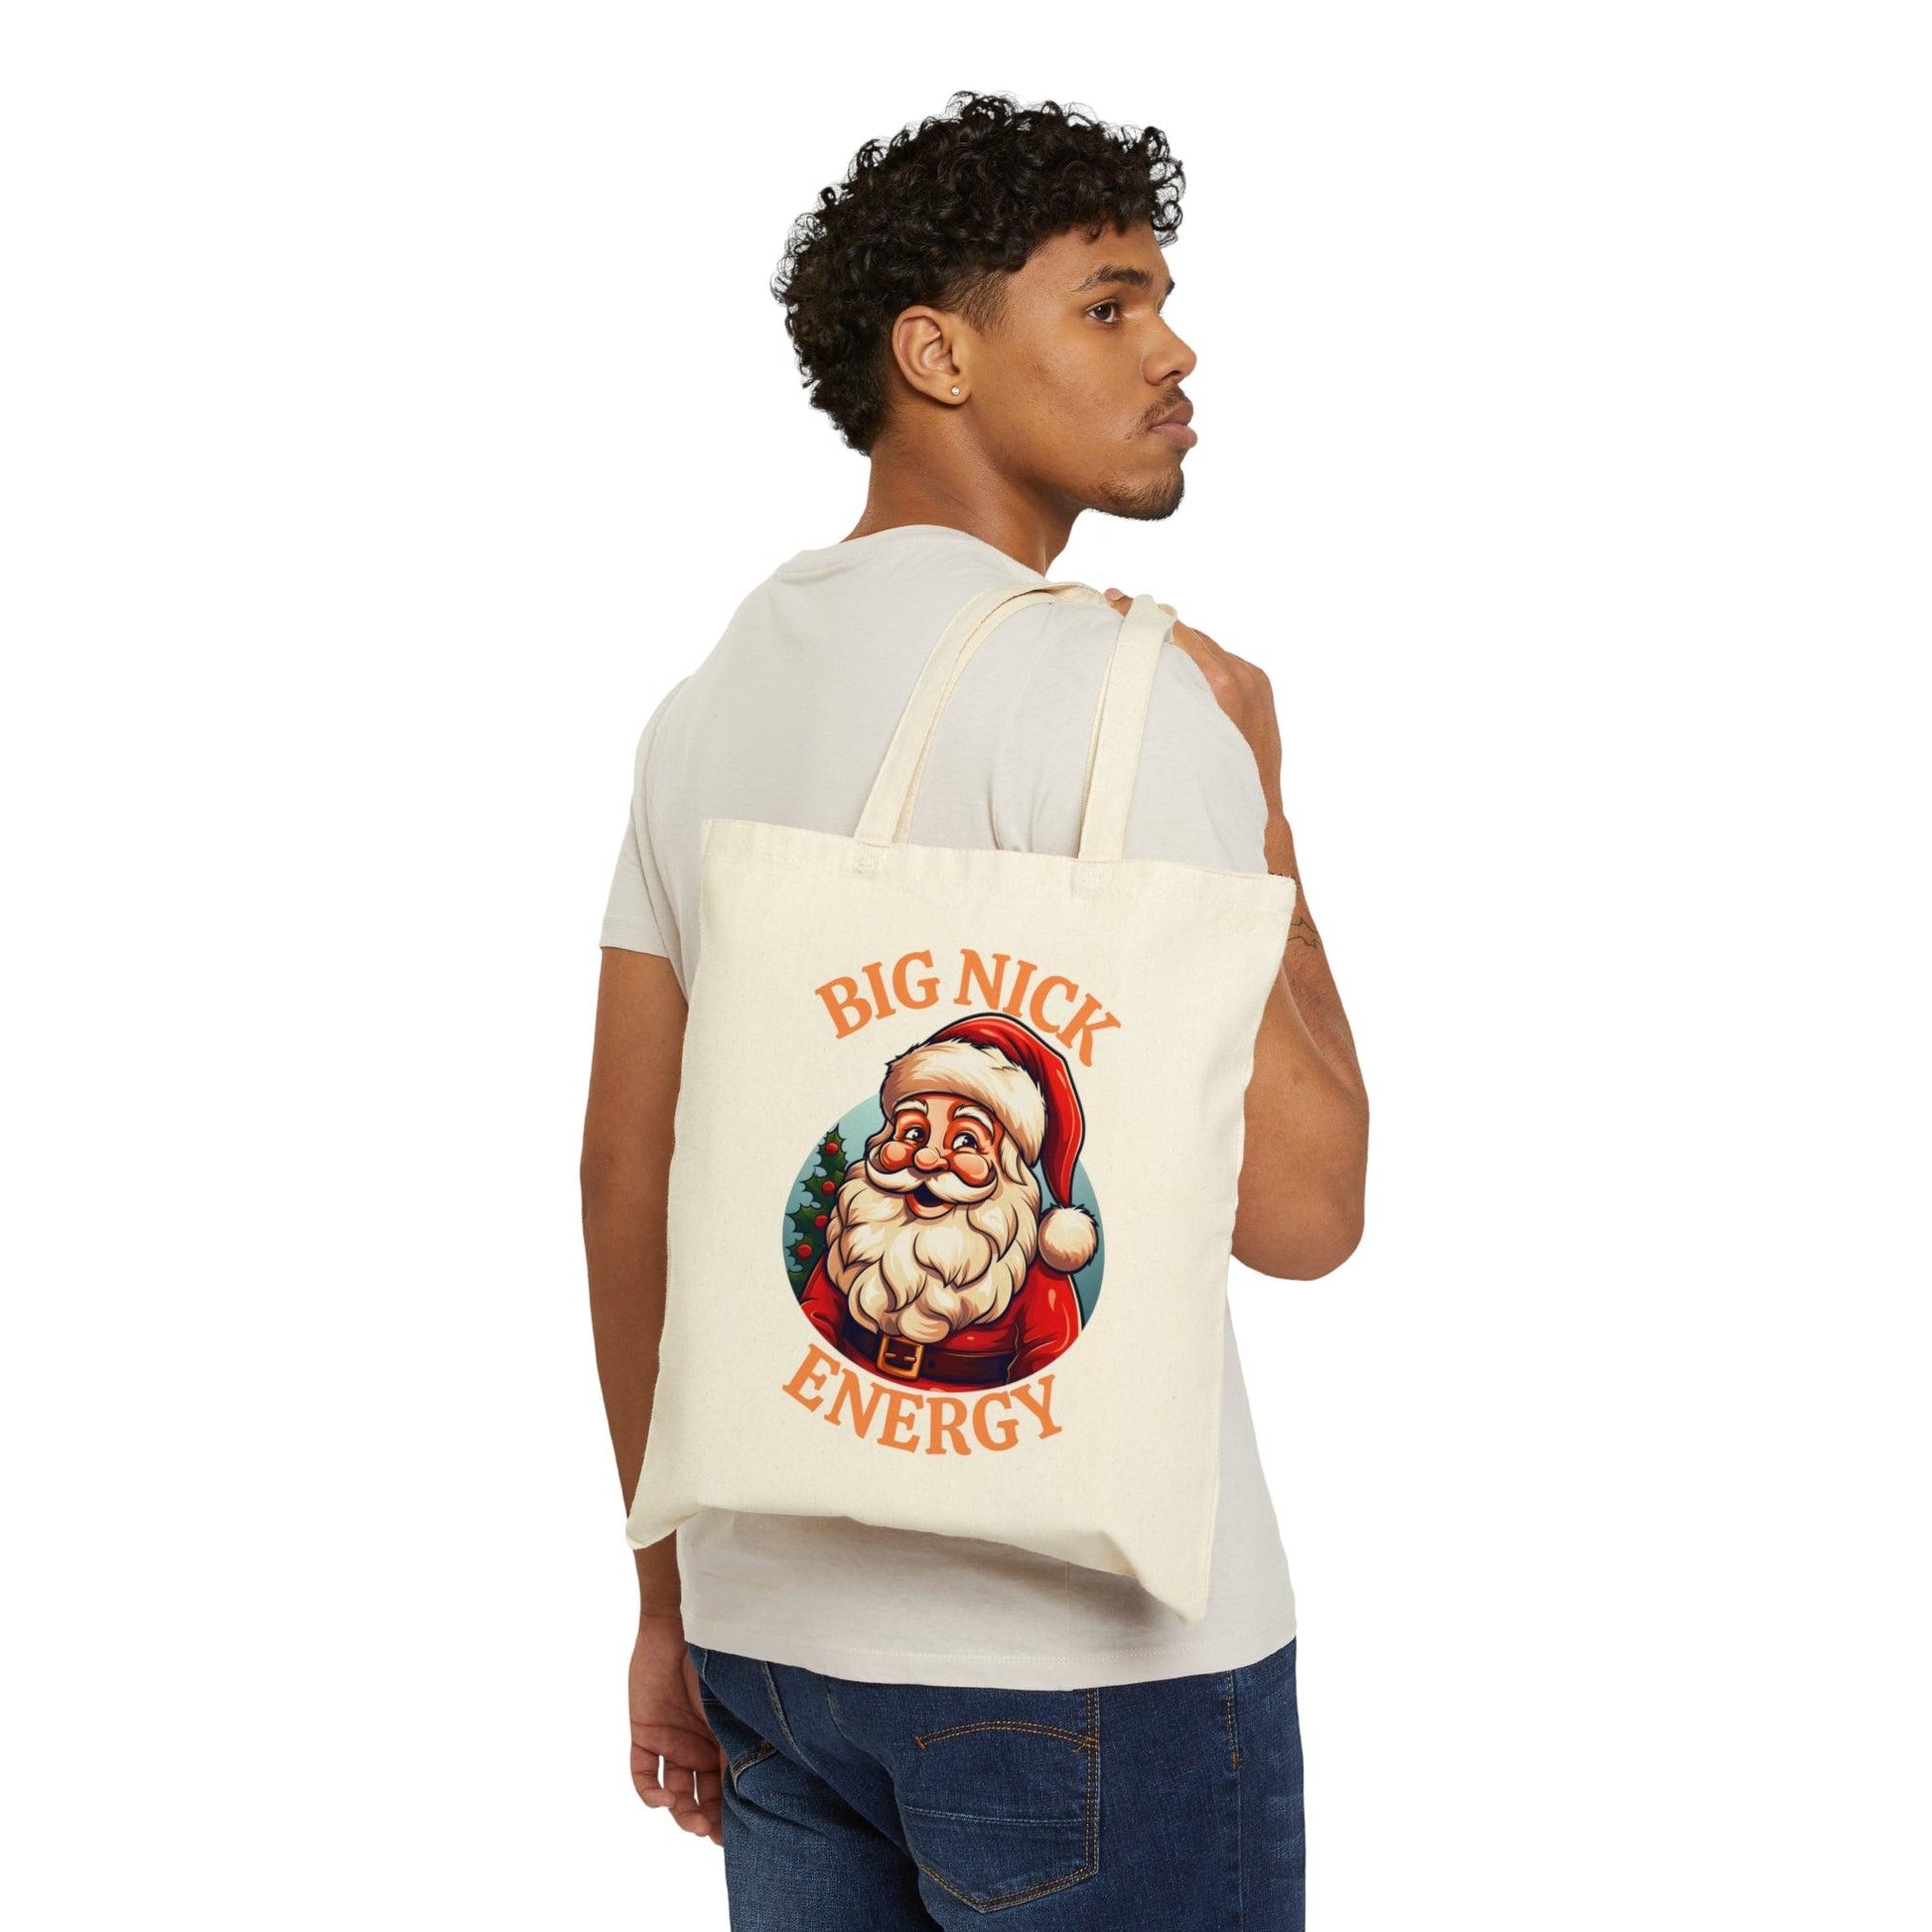 Big Nick Energy Bag Santa Tote Bag Christmas Bag Christmas Tote Bag Santa Claus Totes Bag Canvas Tote Bag Shopping Bag Birthday Gift Bag - Giftsmojo